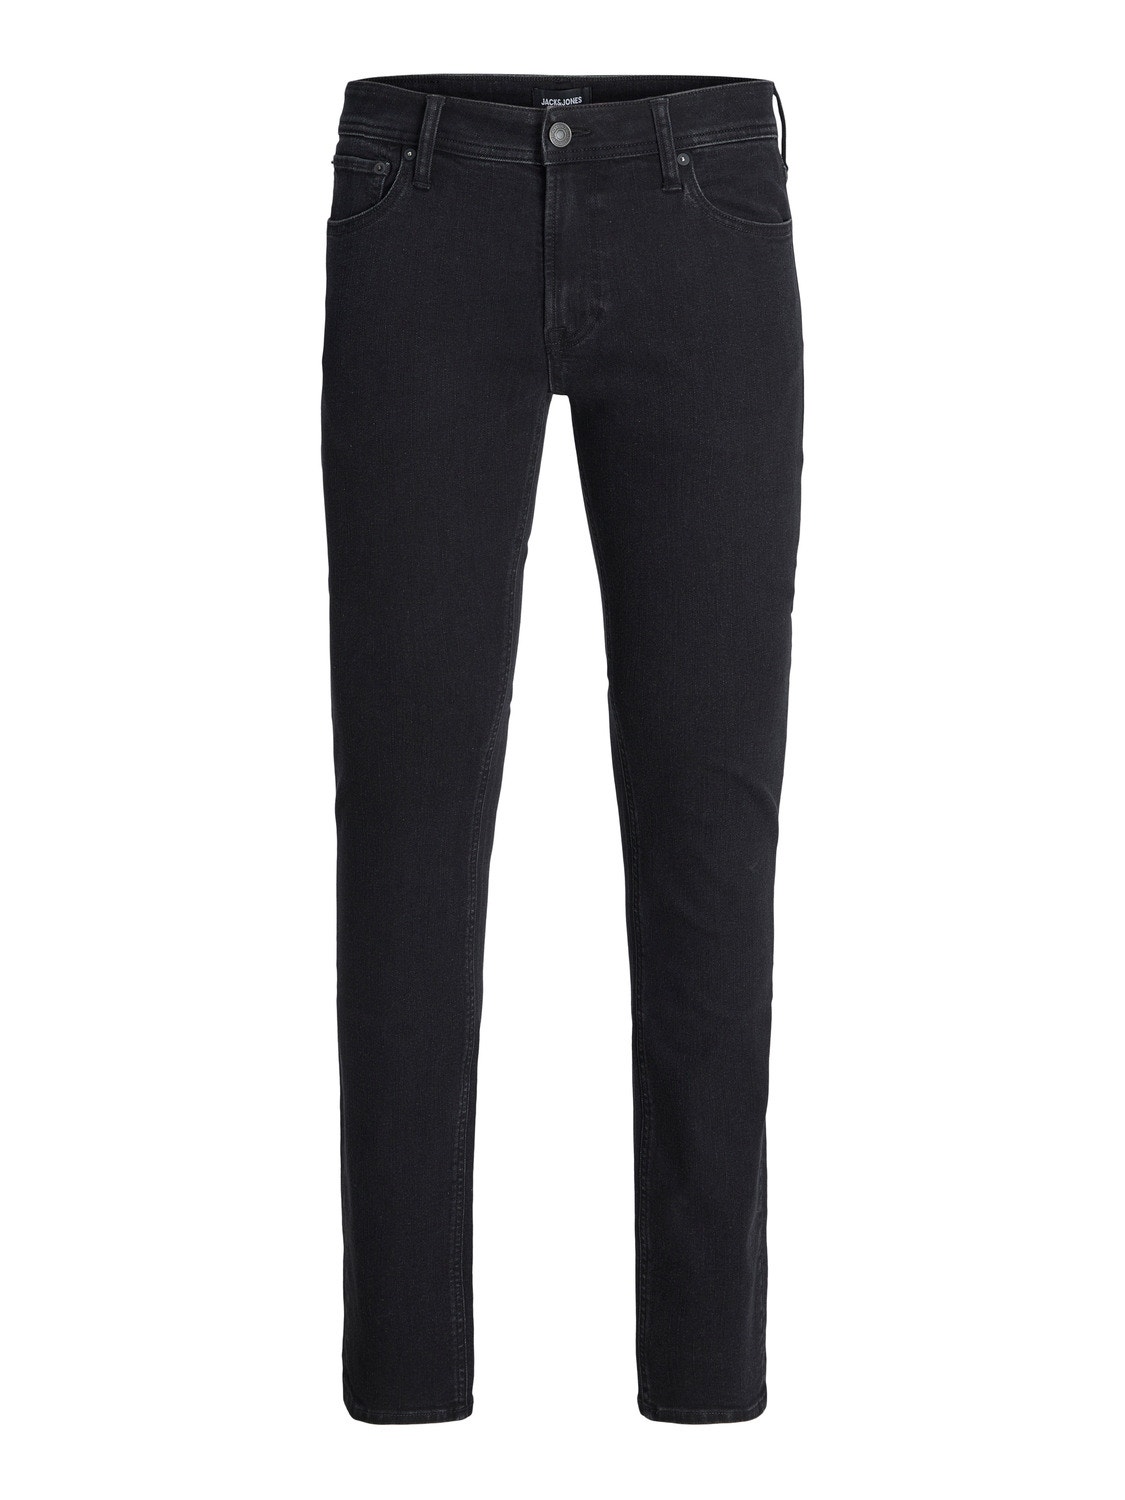 JJIMIKE JJORIGINAL SQ 356 Tapered fit jeans with 20% discount! | Jack ...